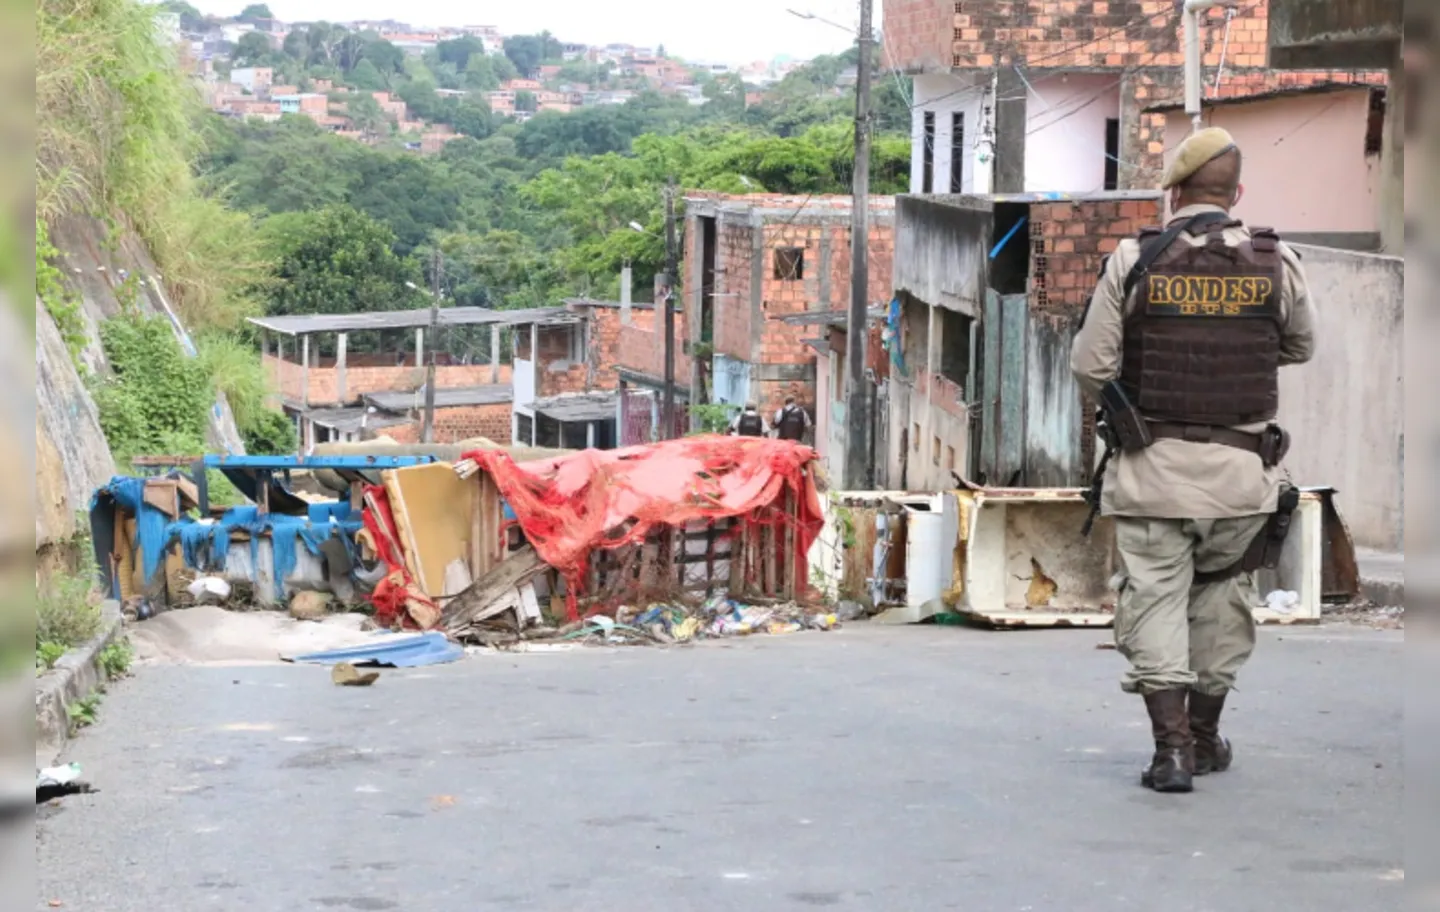 Obstáculos serão removidos em bairros da capital baiana | Foto: Alberto Maraux | SSP